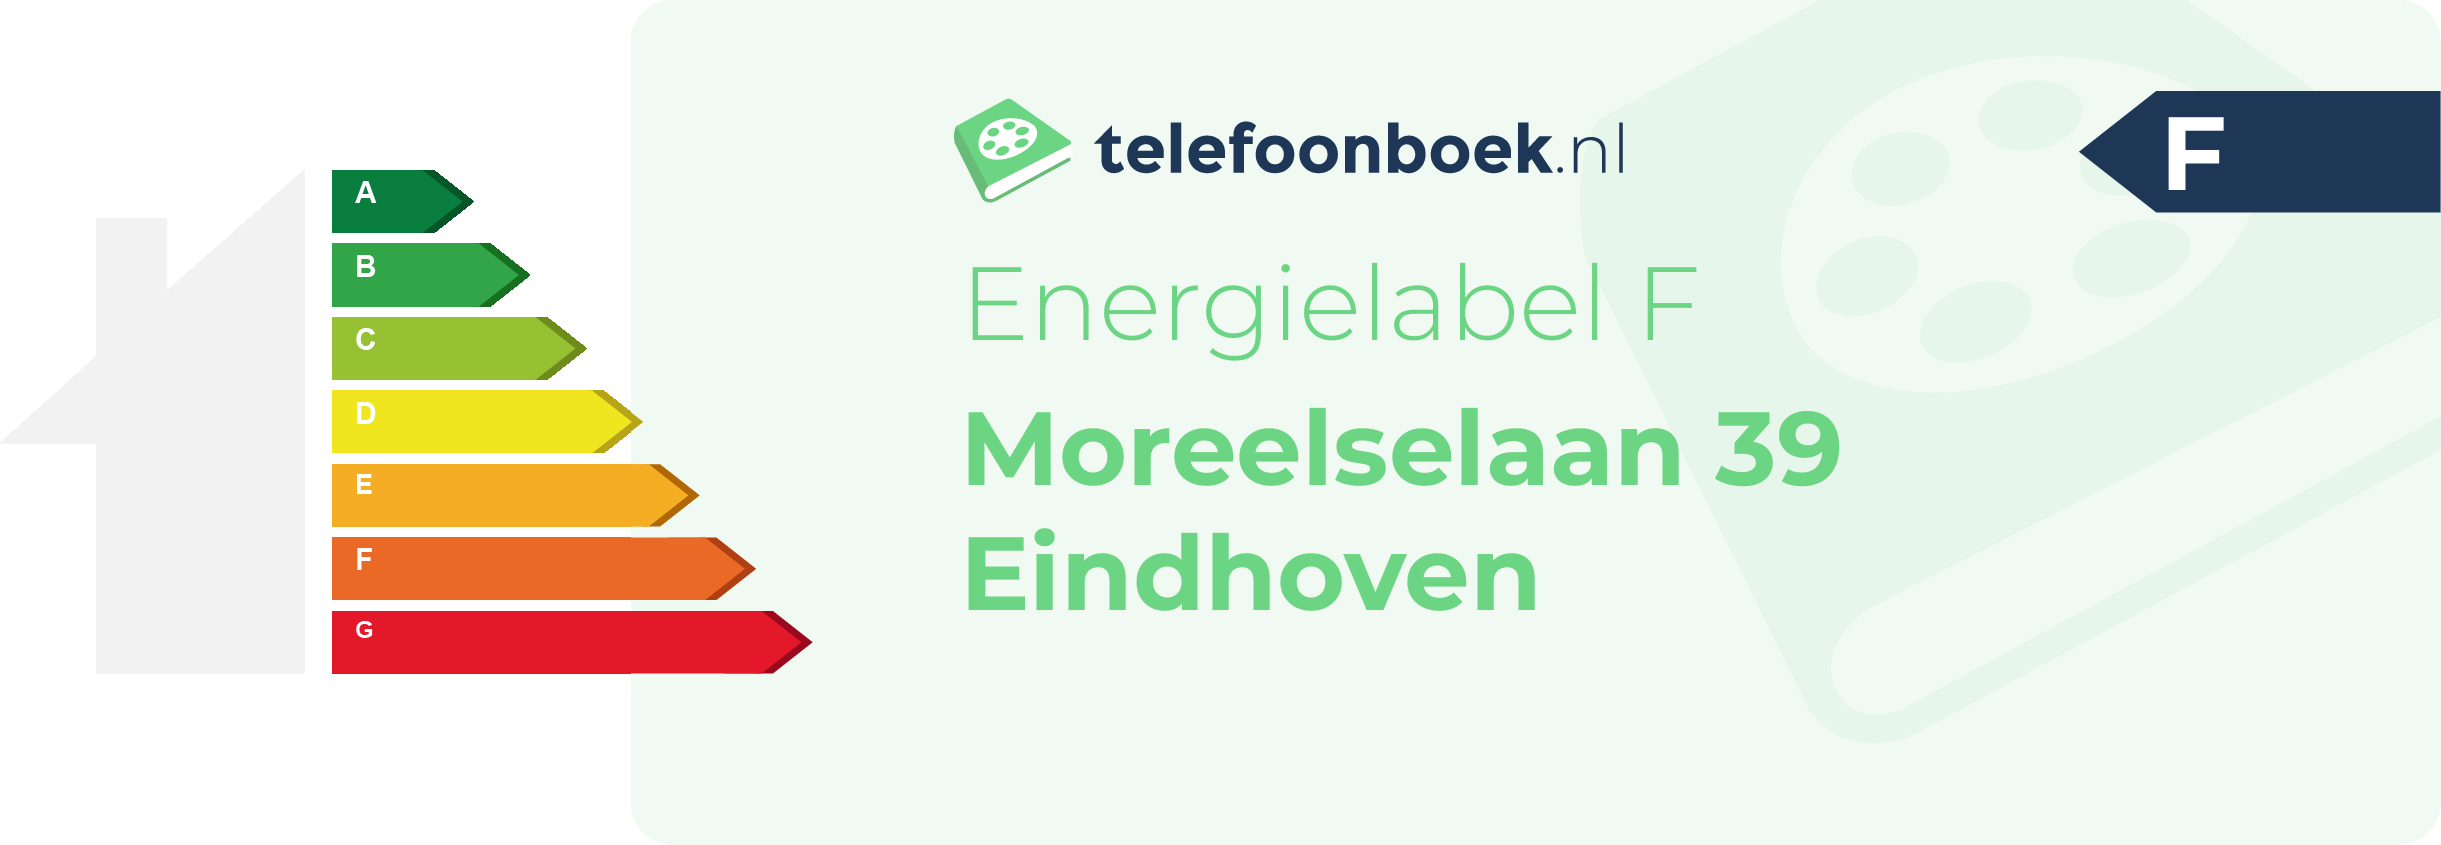 Energielabel Moreelselaan 39 Eindhoven